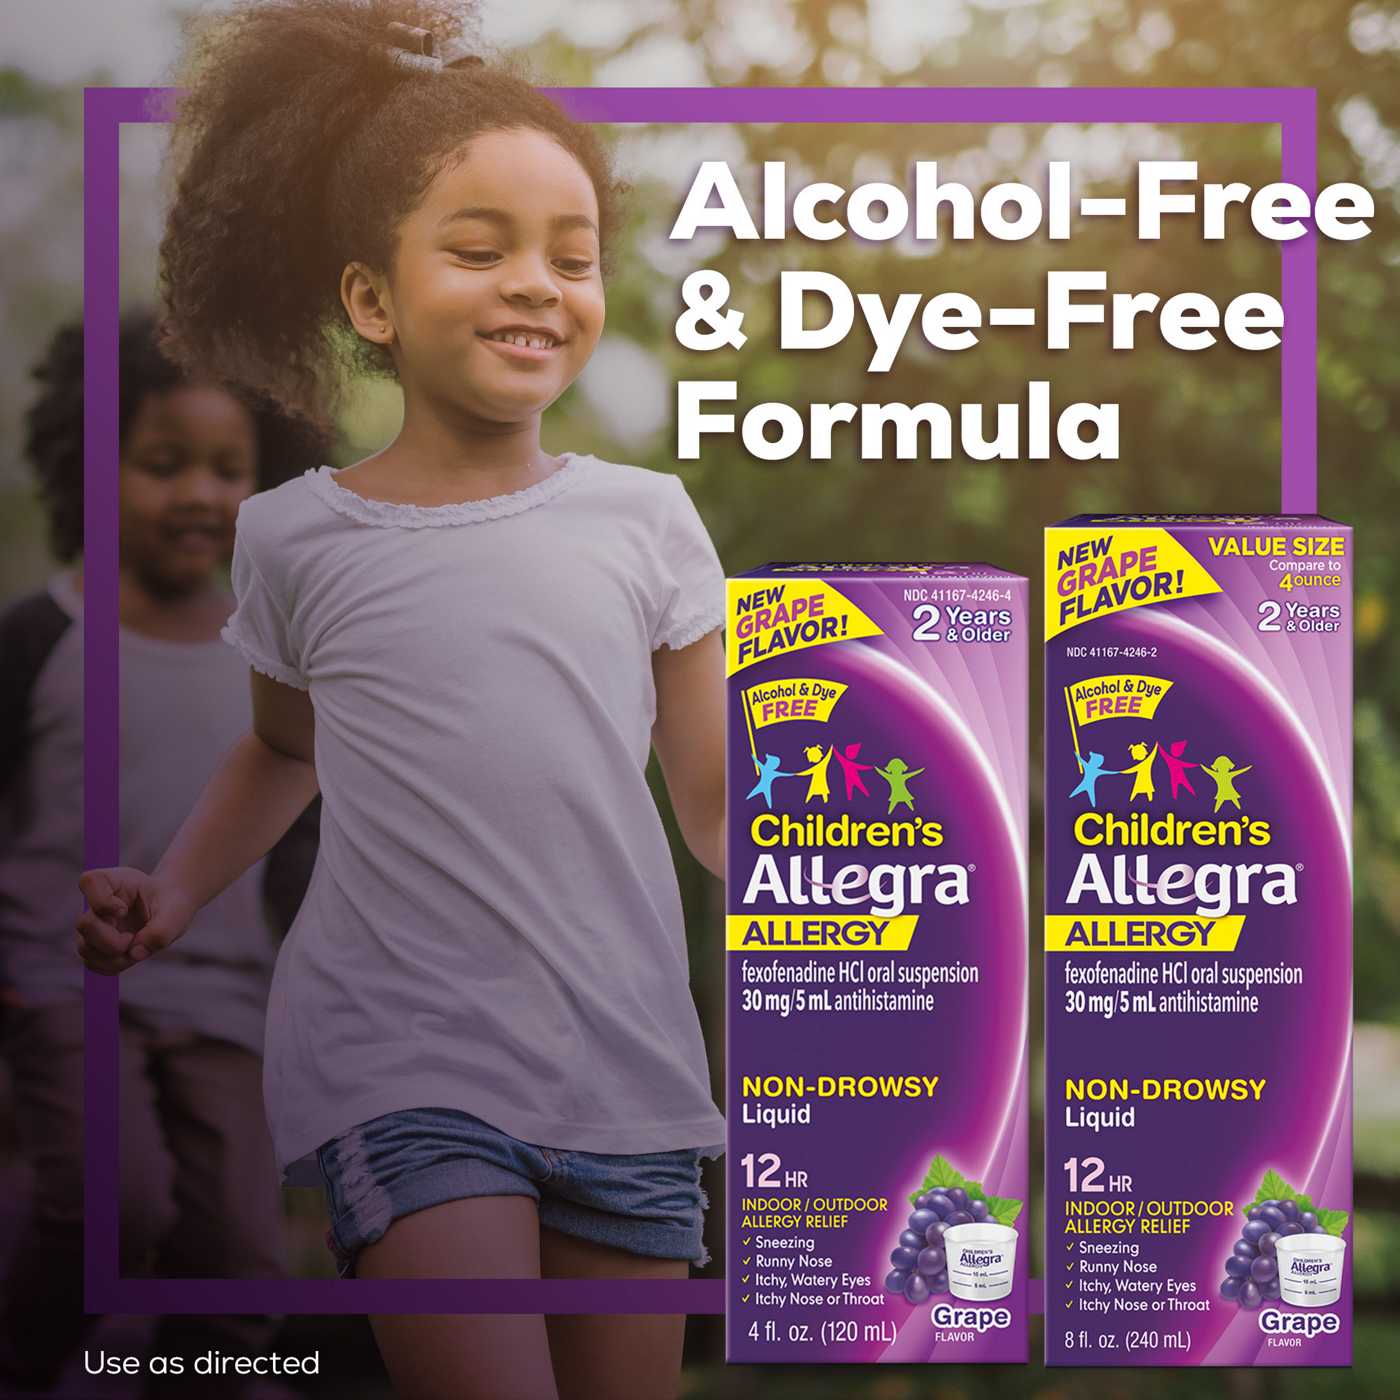 Allegra Children's Allergy 12 Hour Non-Drowsy Liquid - Grape; image 2 of 6